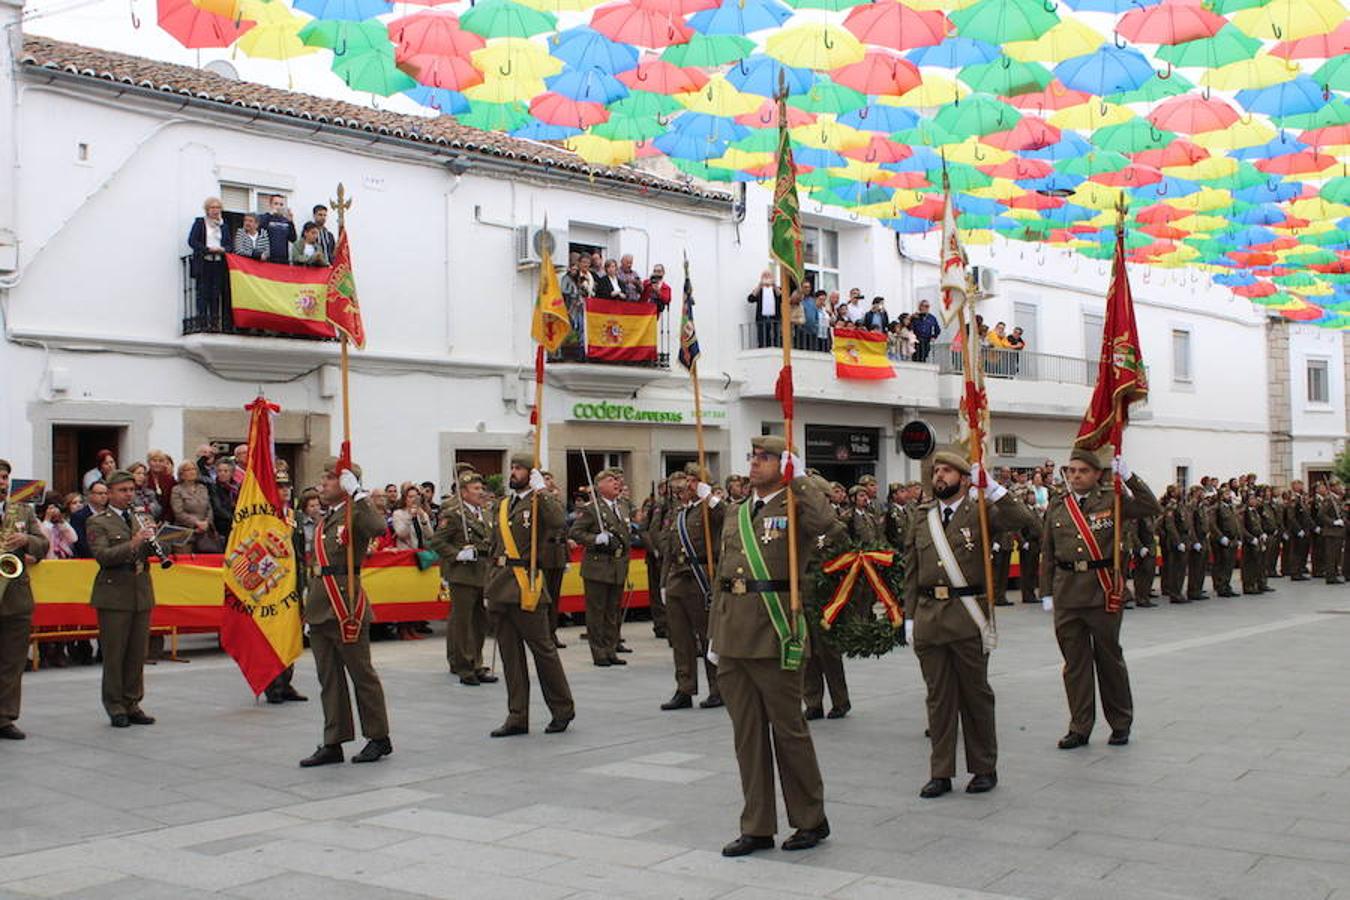 Jura de bandera en la Plaza Mayor 